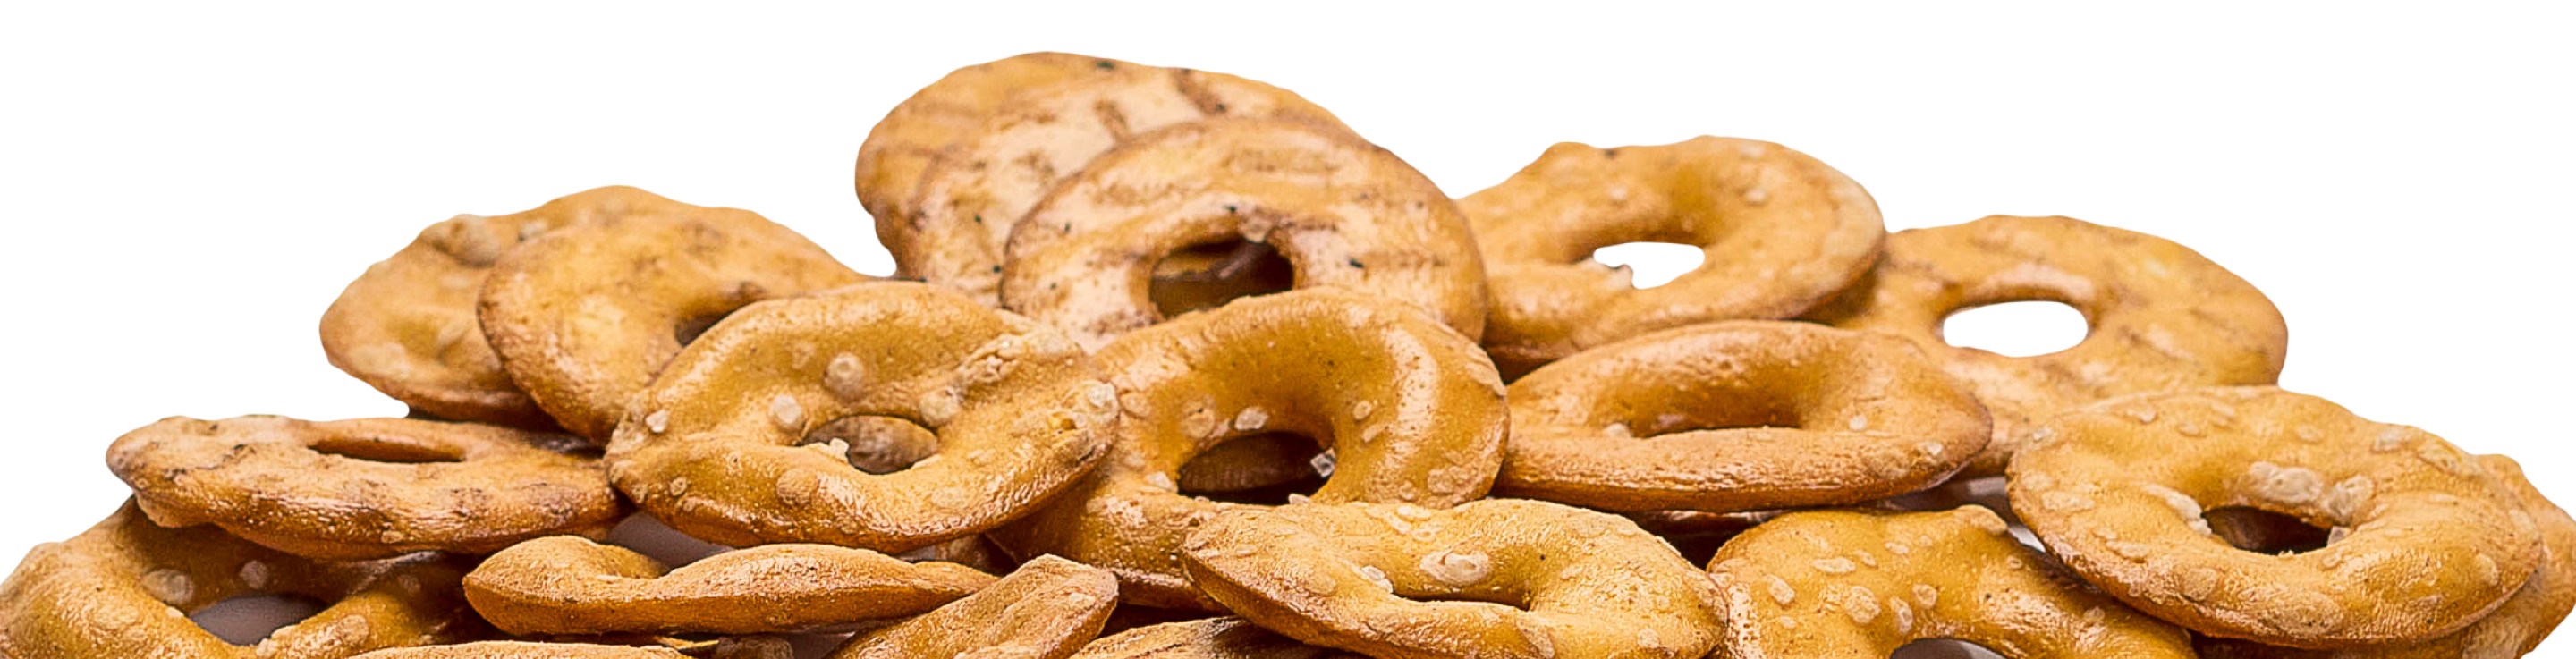 Round pretzels